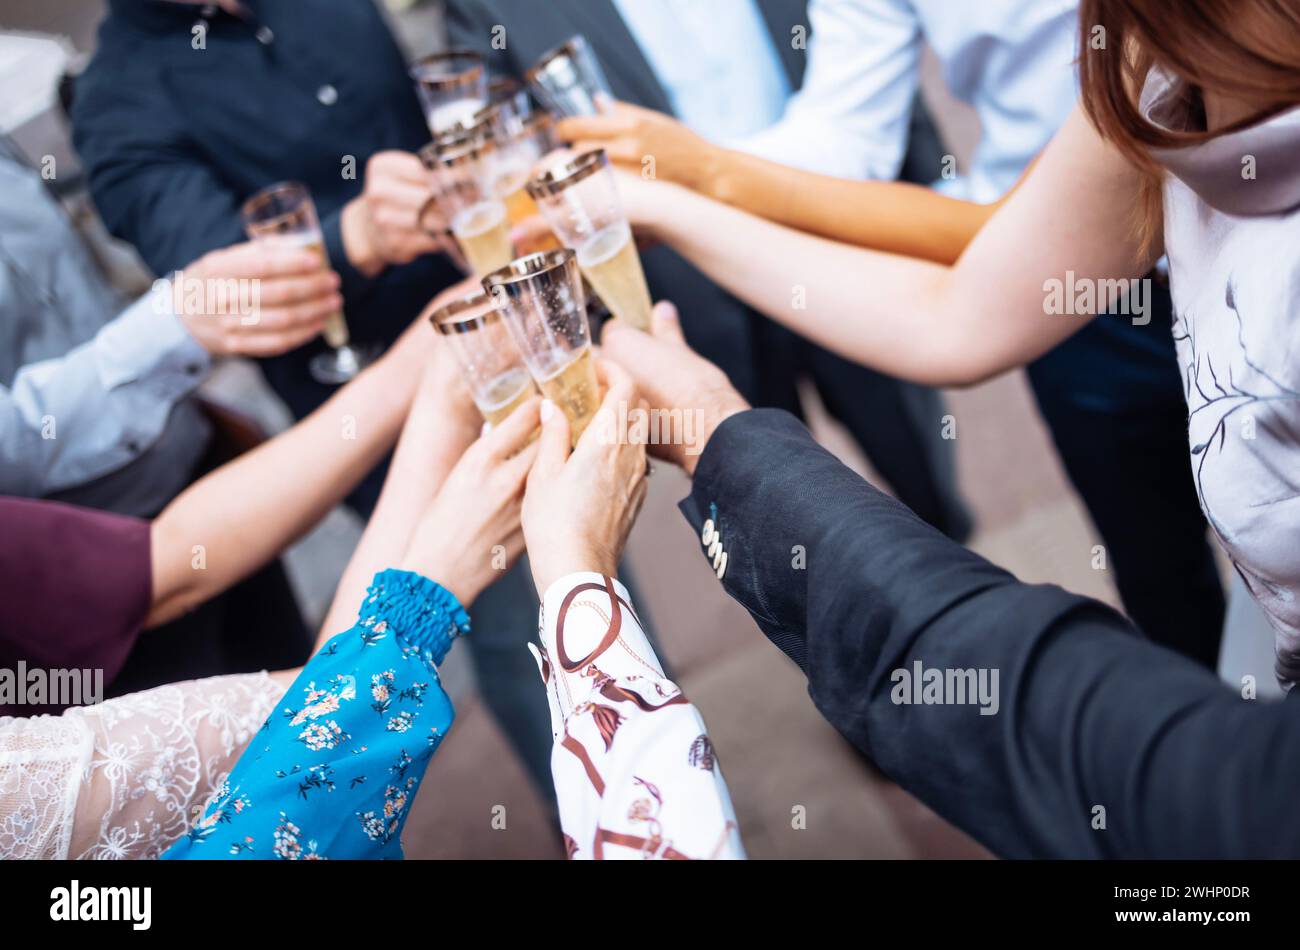 Weibliche und männliche Hände halten elegante, langstielige Champagnergläser und stoßen sie an. Stockfoto